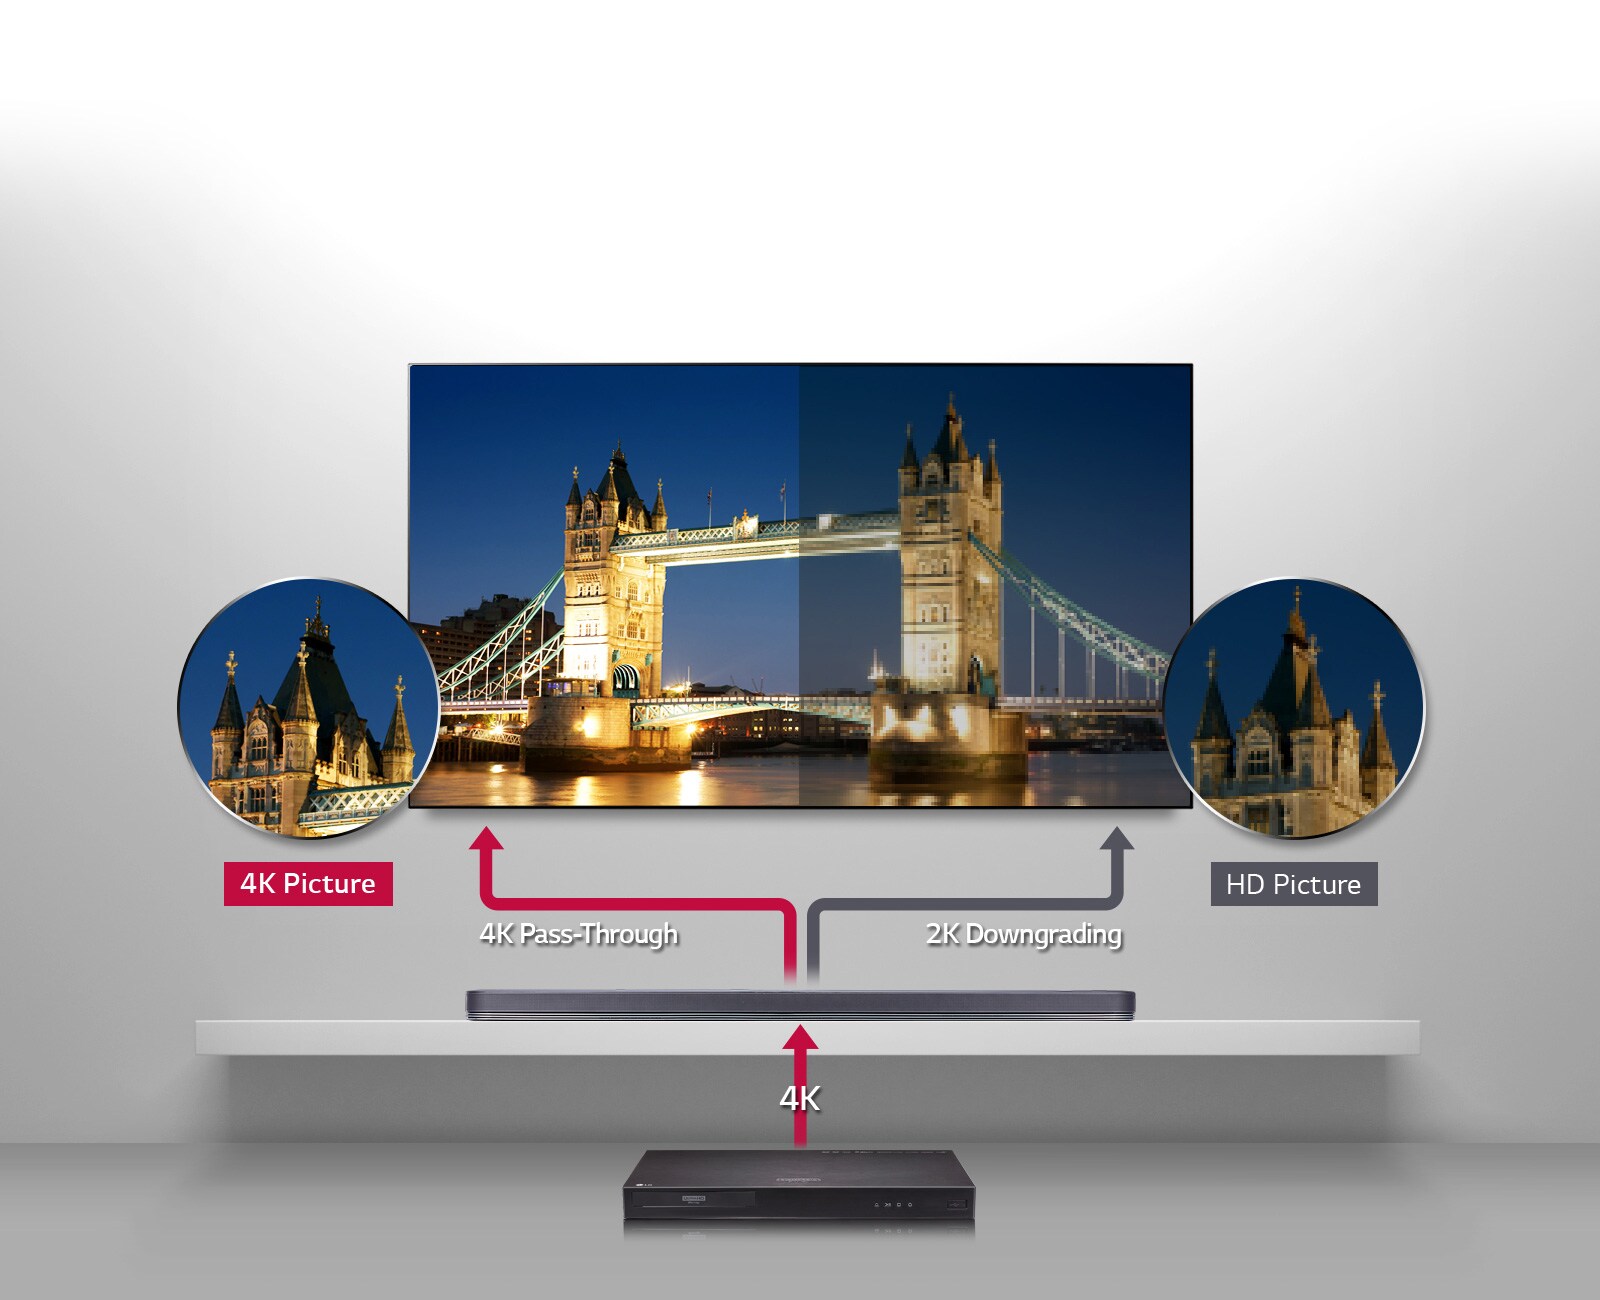 LG lanza sus nuevas barras de sonido a juego con sus televisores OLED:  potencia y elegancia descomunal